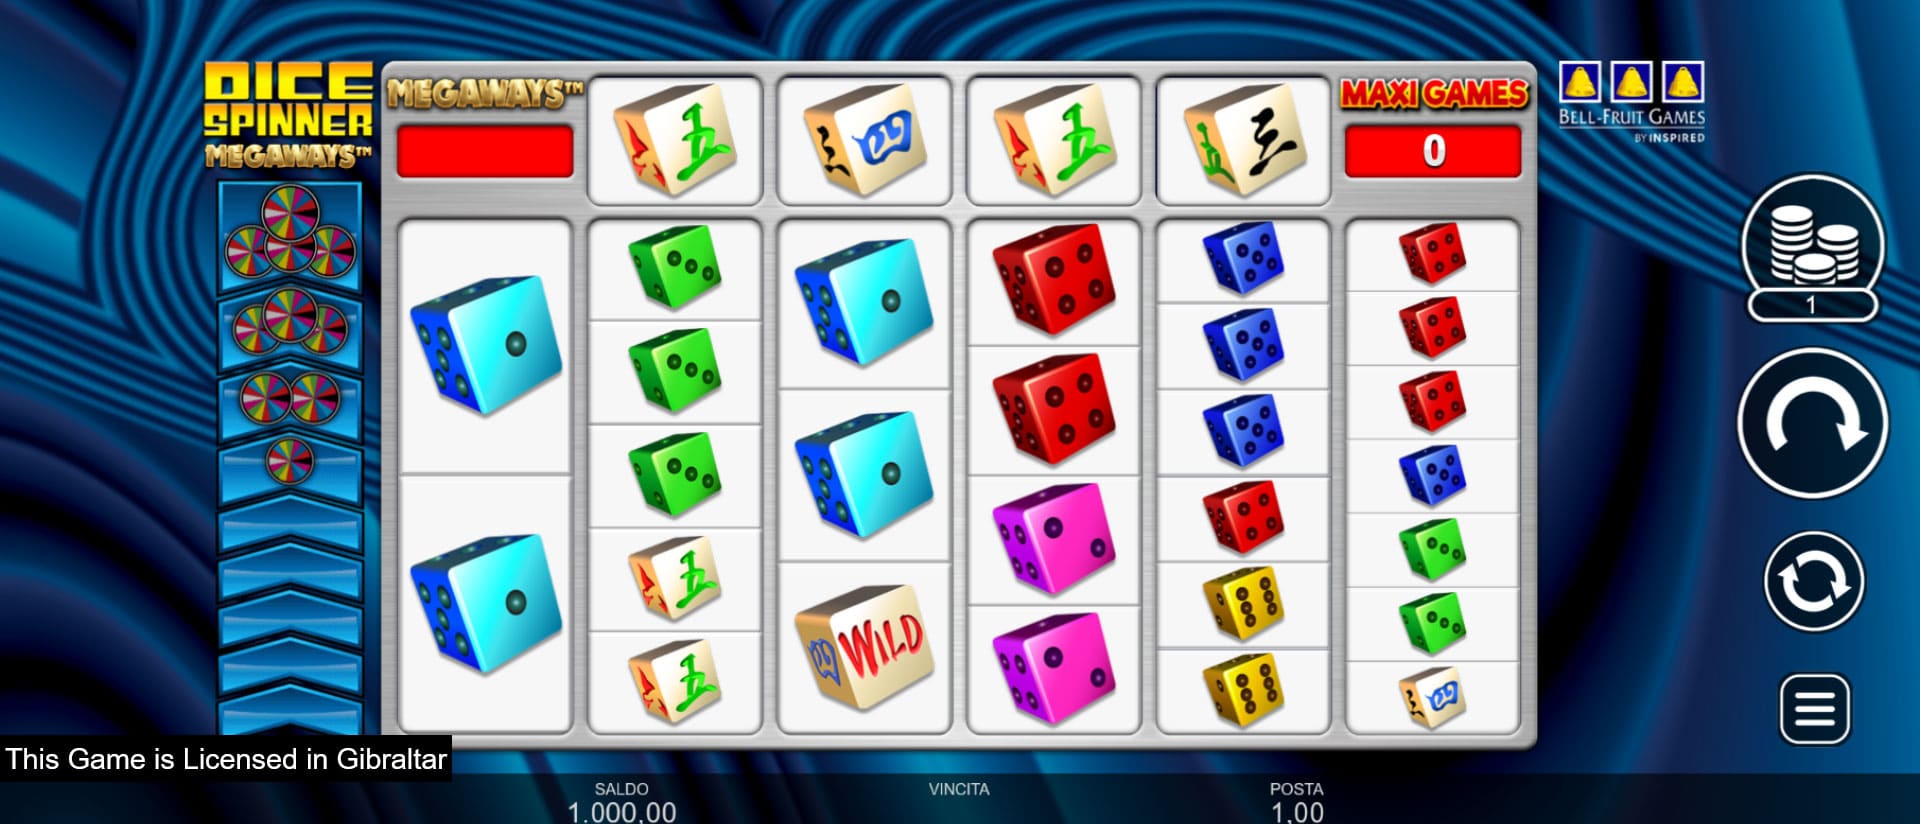 schermata di gioco della slot machine dice spinner megaways